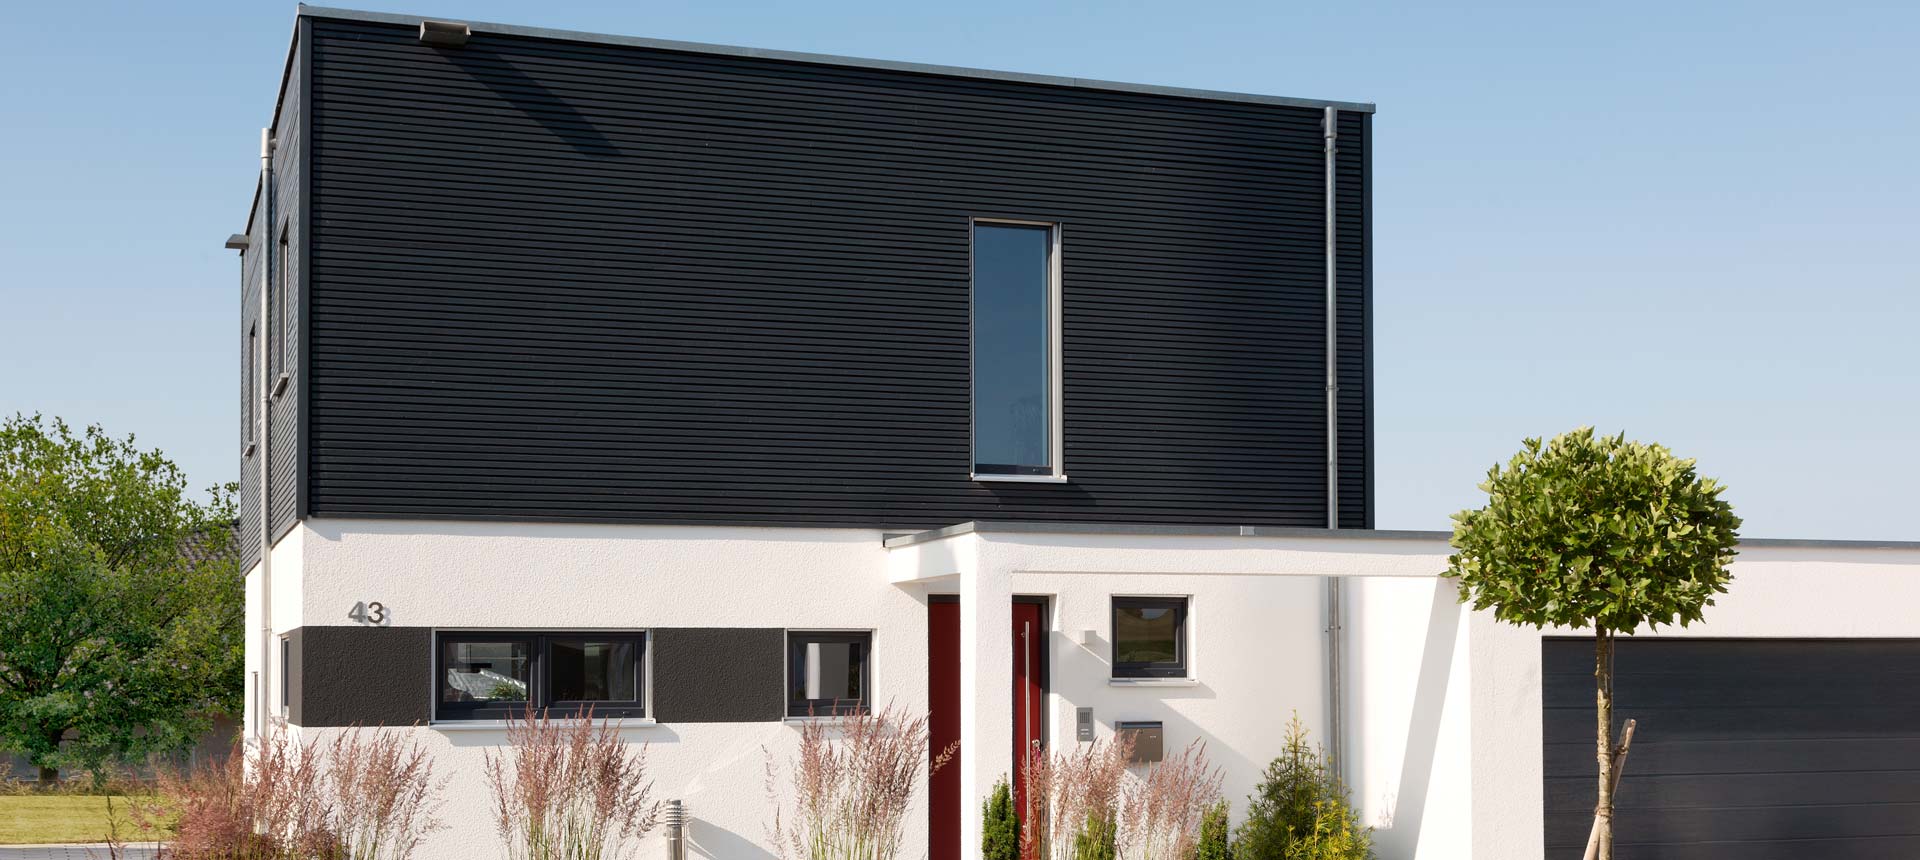 SchwörerHaus ist für den Hausbau Design Award 2015 nominiert